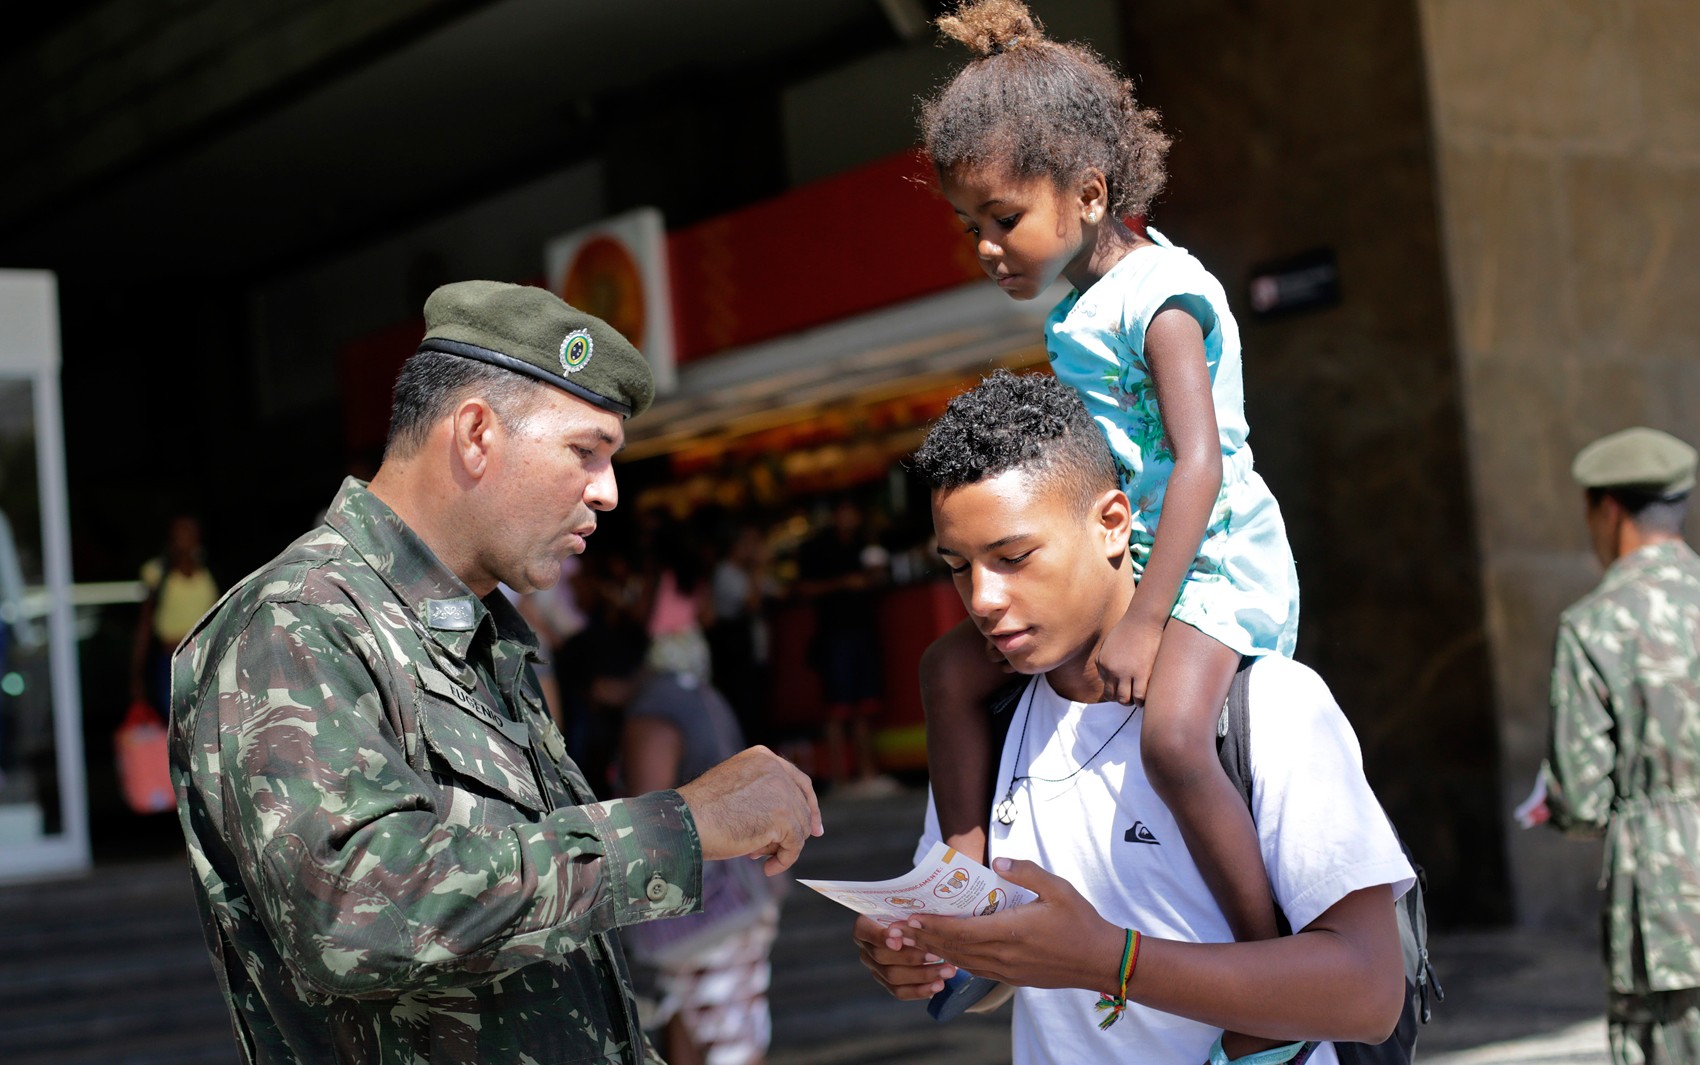   Soldado distribui panfleto sobre Aedes aegypti no Rio de Janeiro 